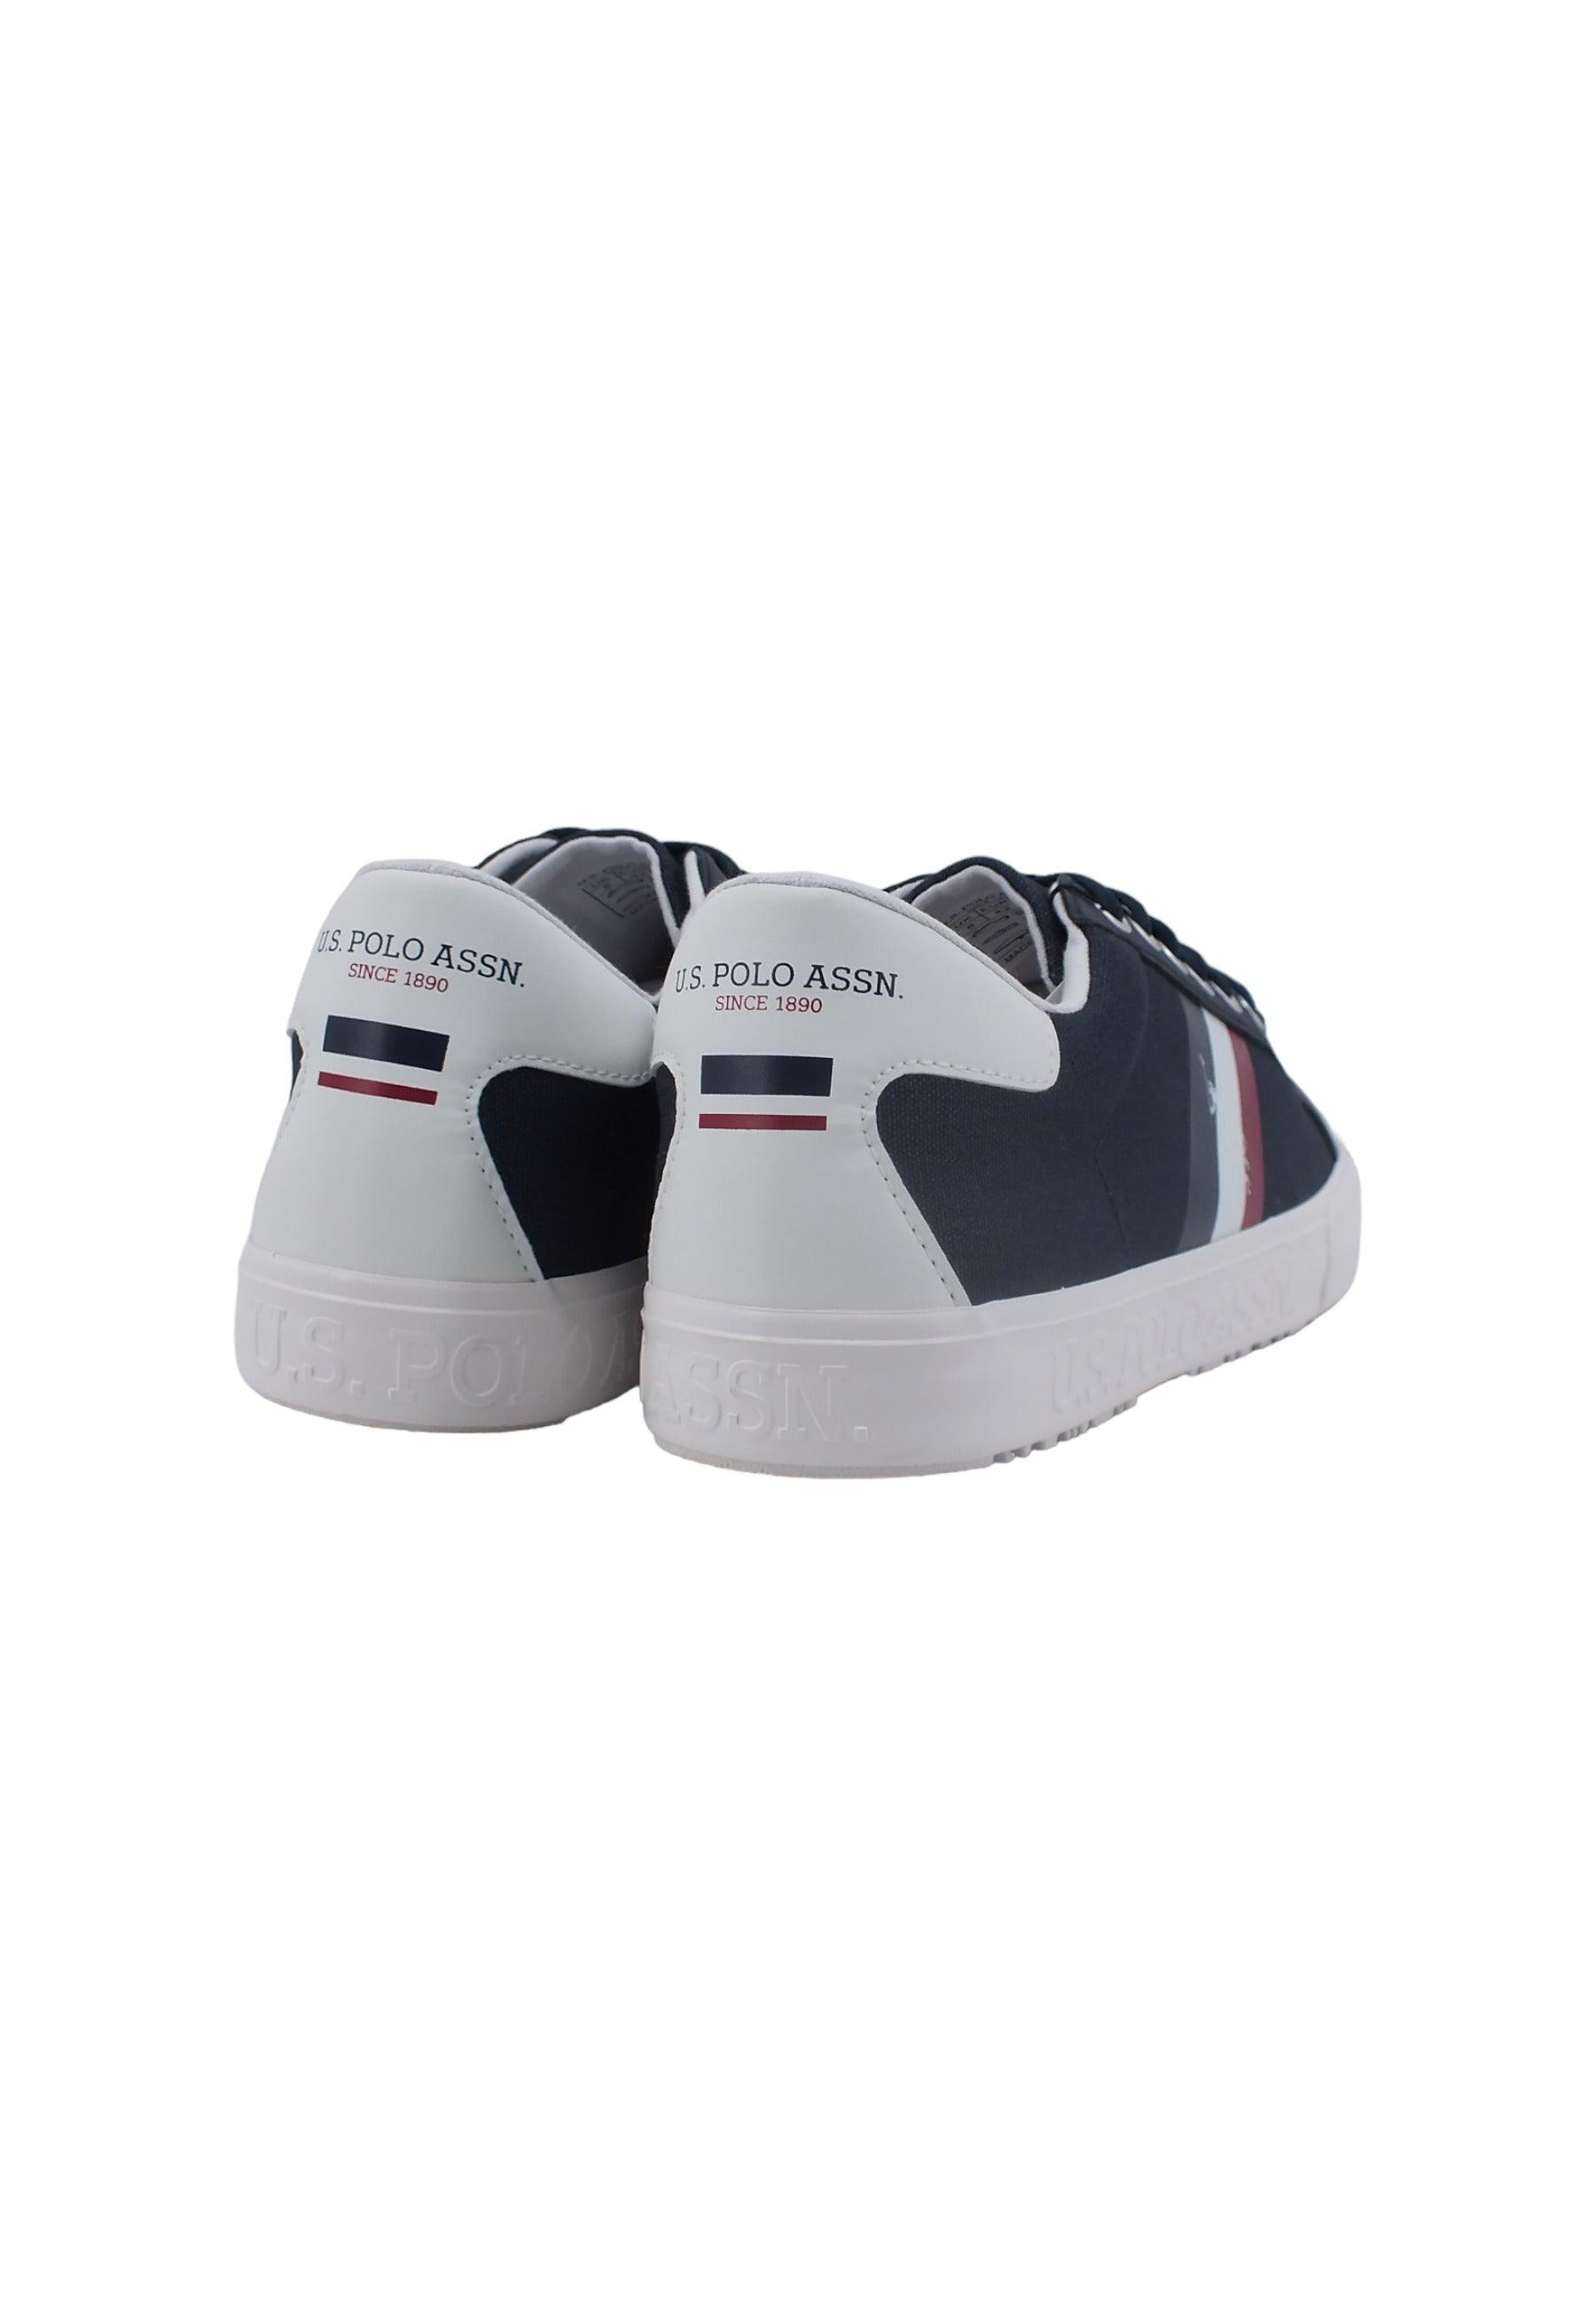 U.S. POLO ASSN. Sneaker Uomo Dark Blue MARCS006 - Sandrini Calzature e Abbigliamento